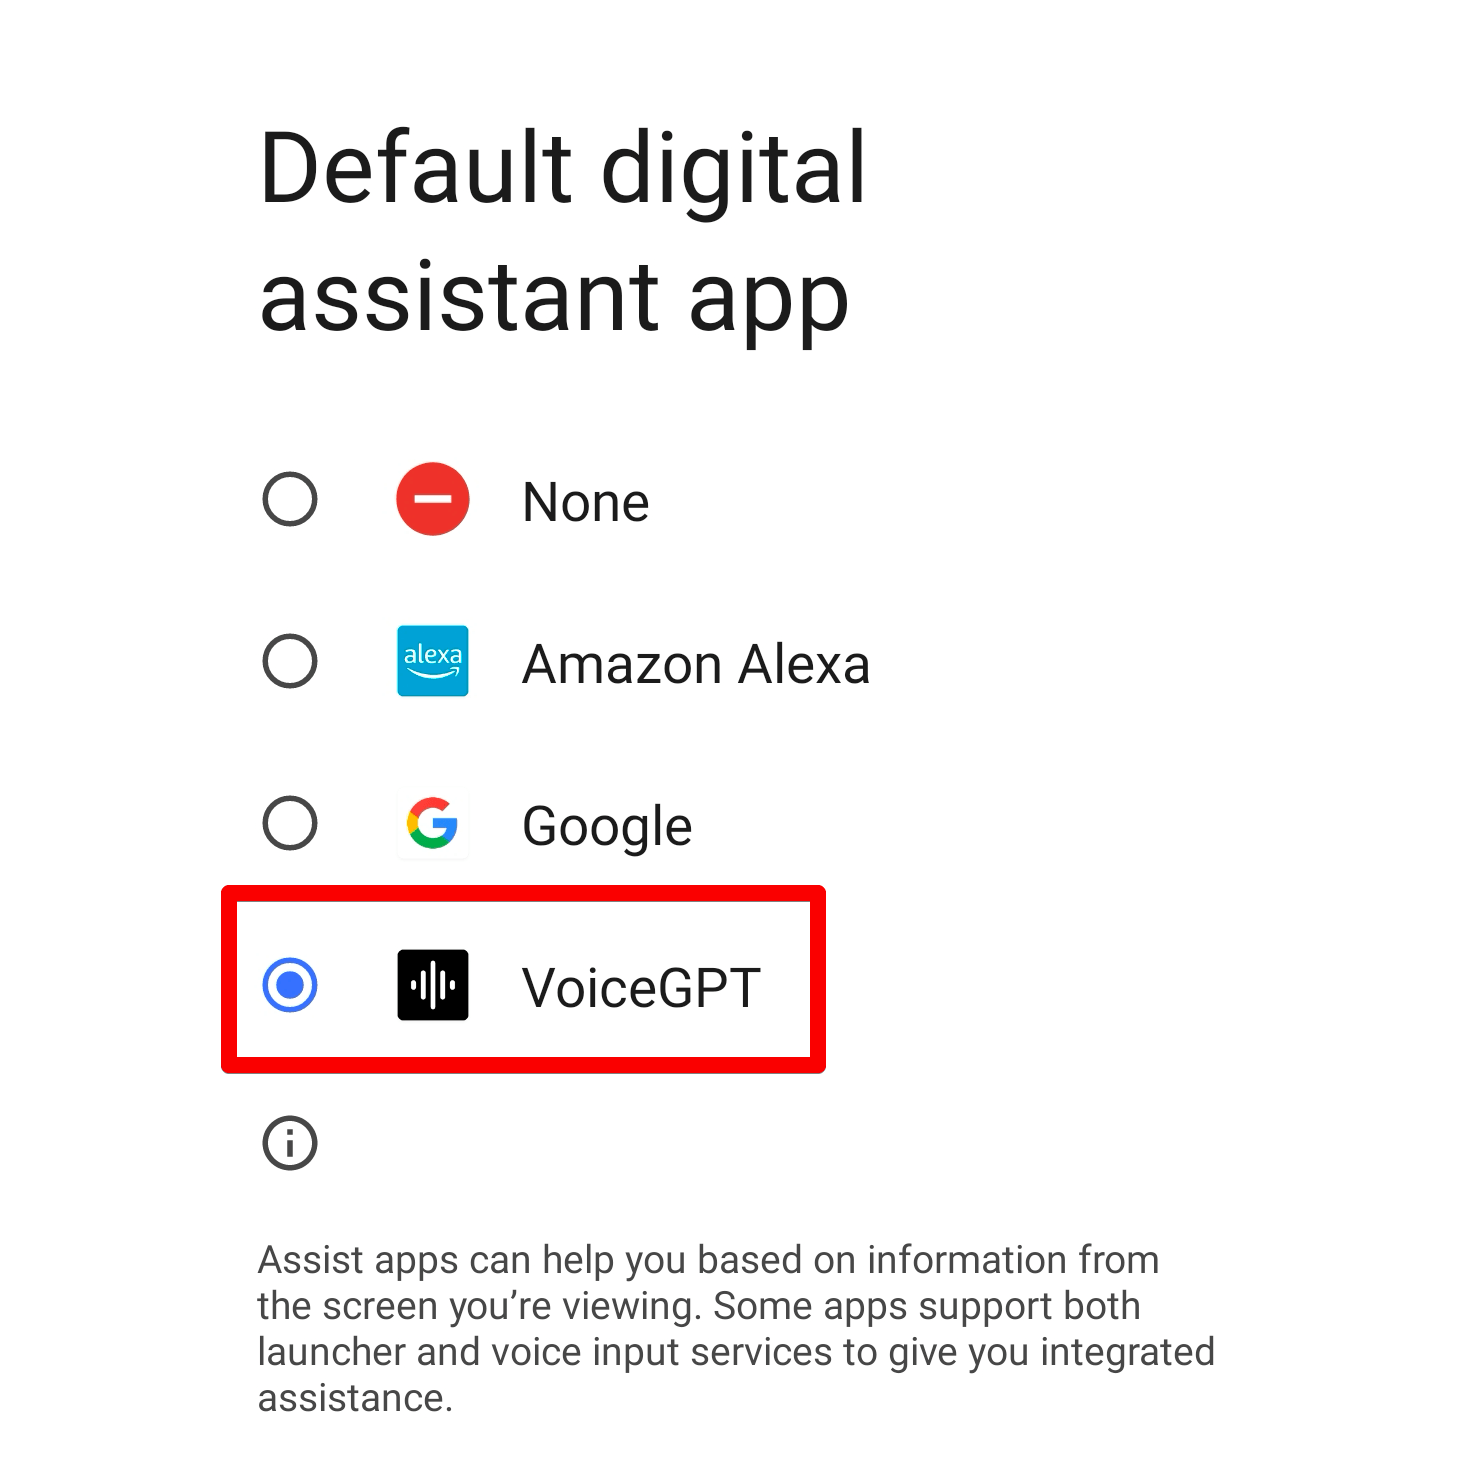 Menu de seleção de aplicativos do assistente digital padrão do Android. O aplicativo VoiceGPT está selecionado. 